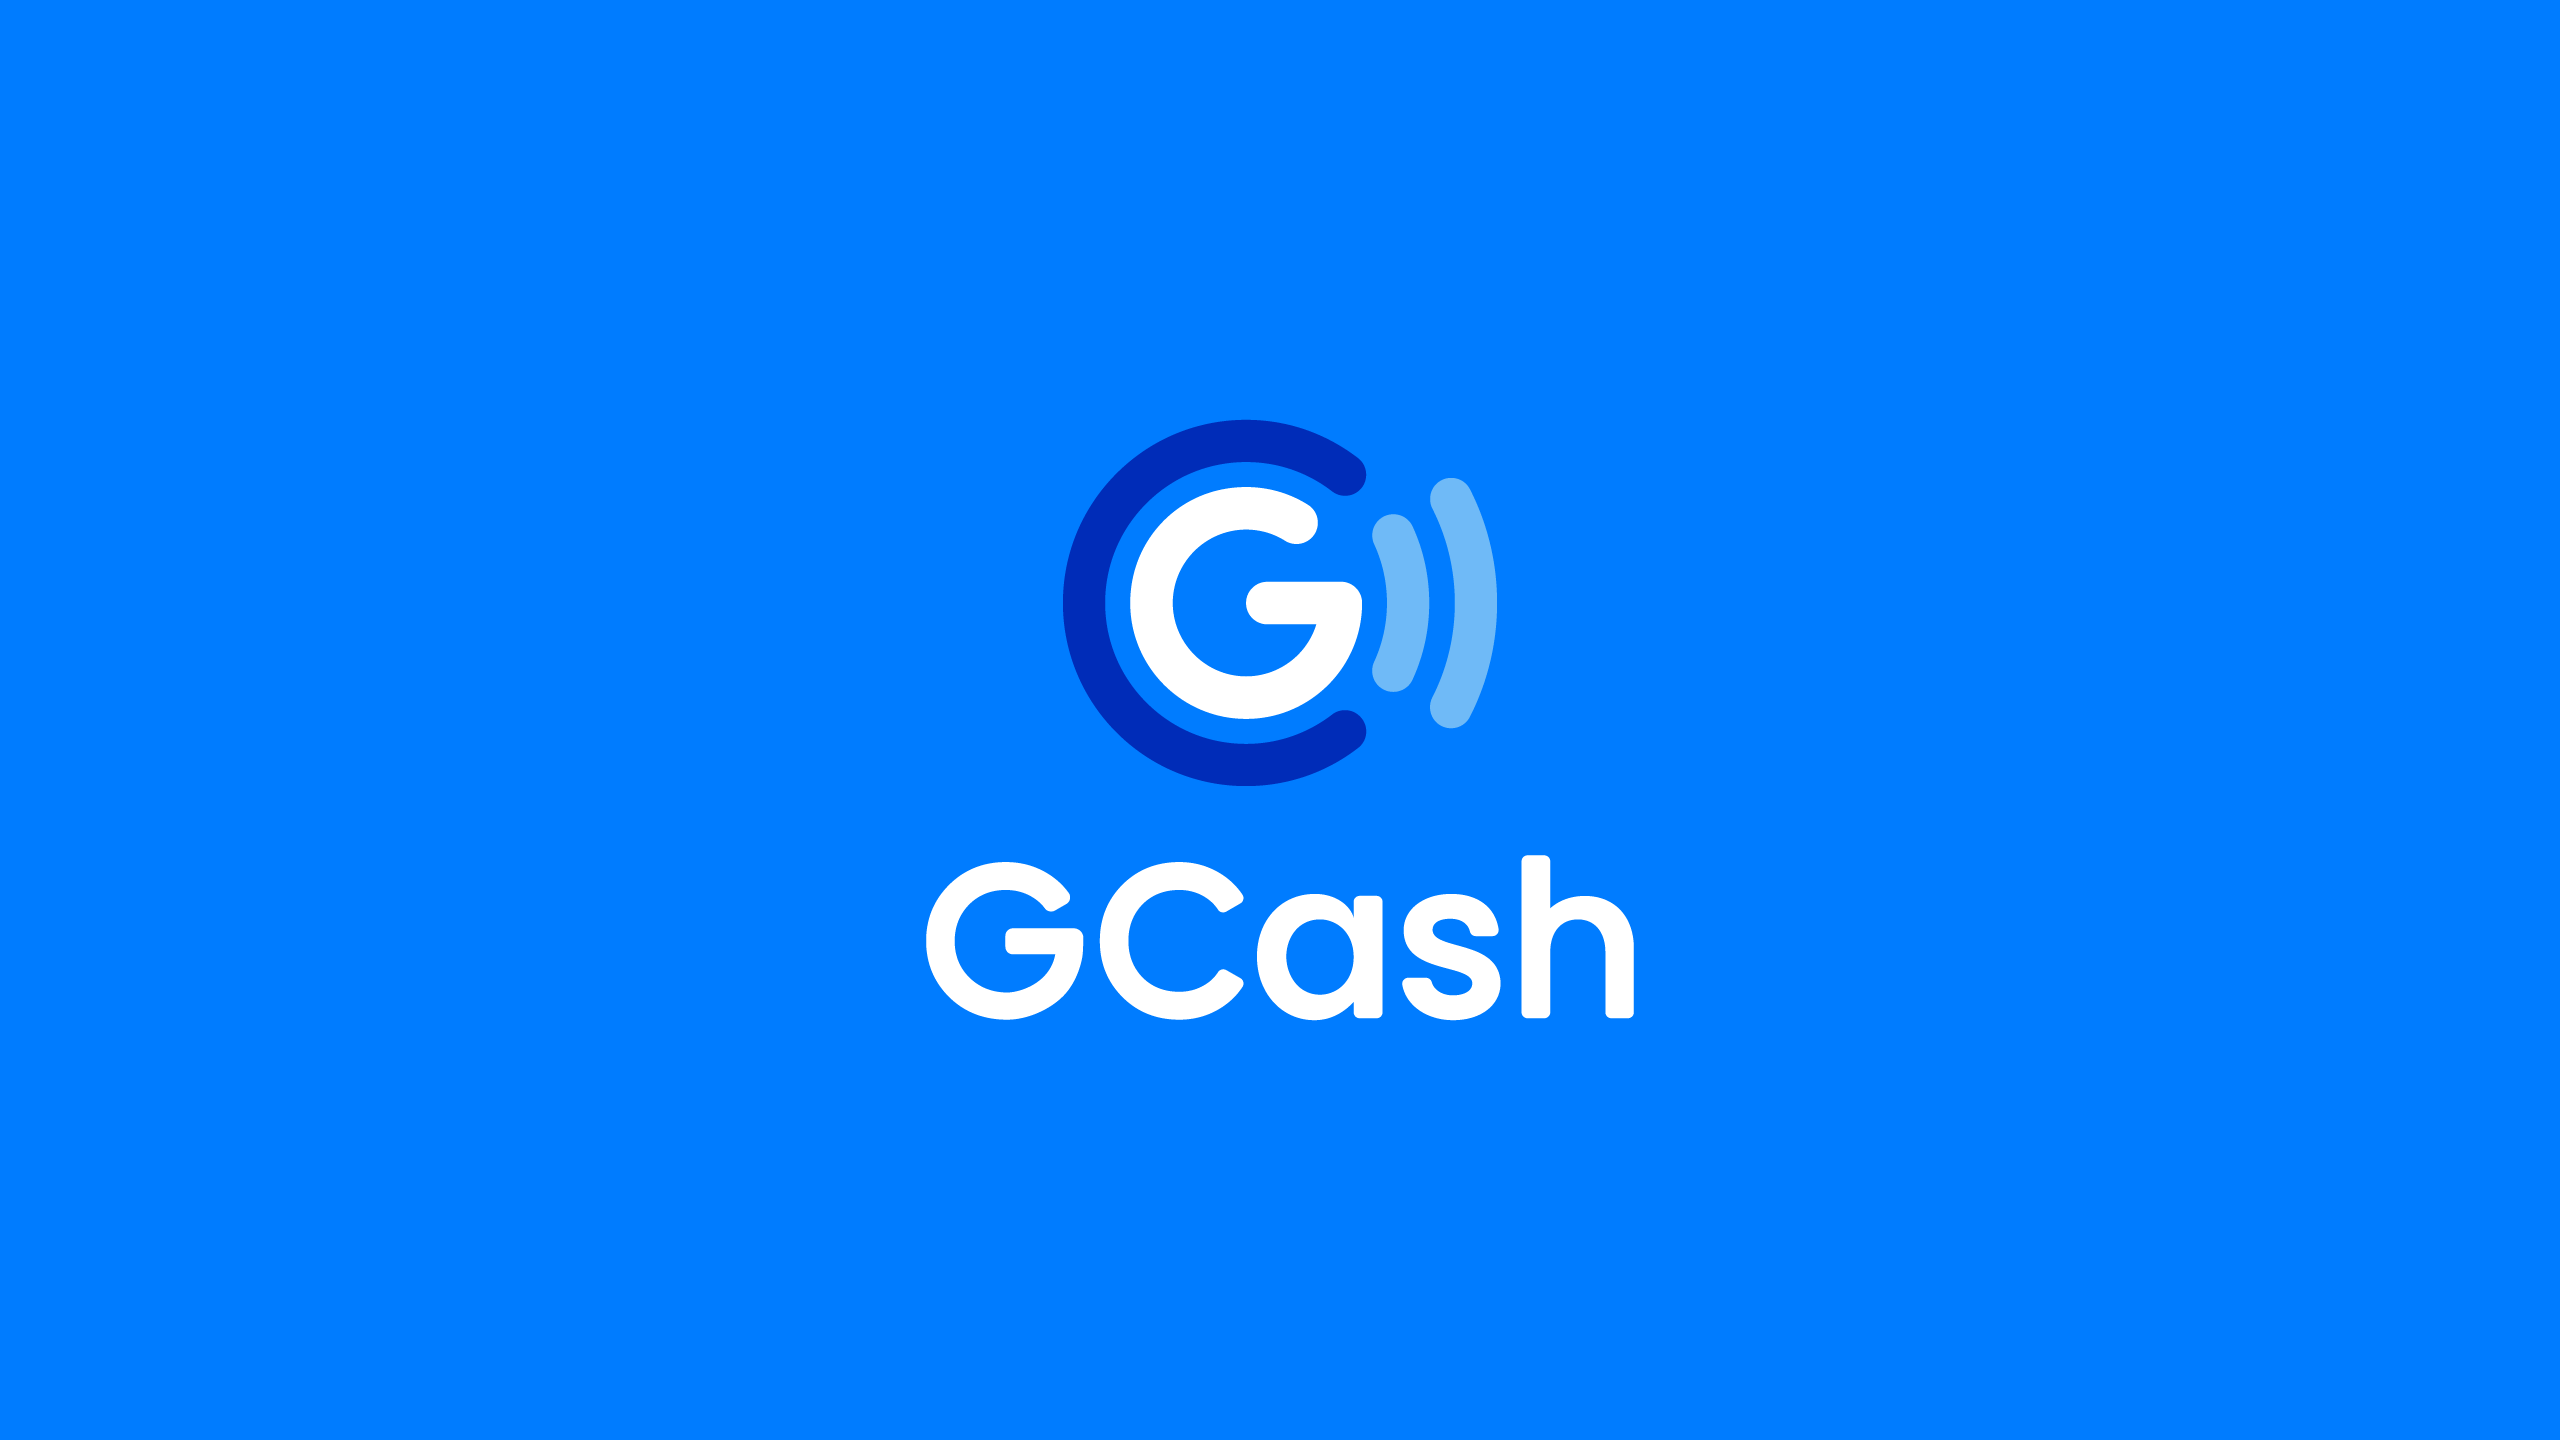 Gcash-Brand-Identity-01